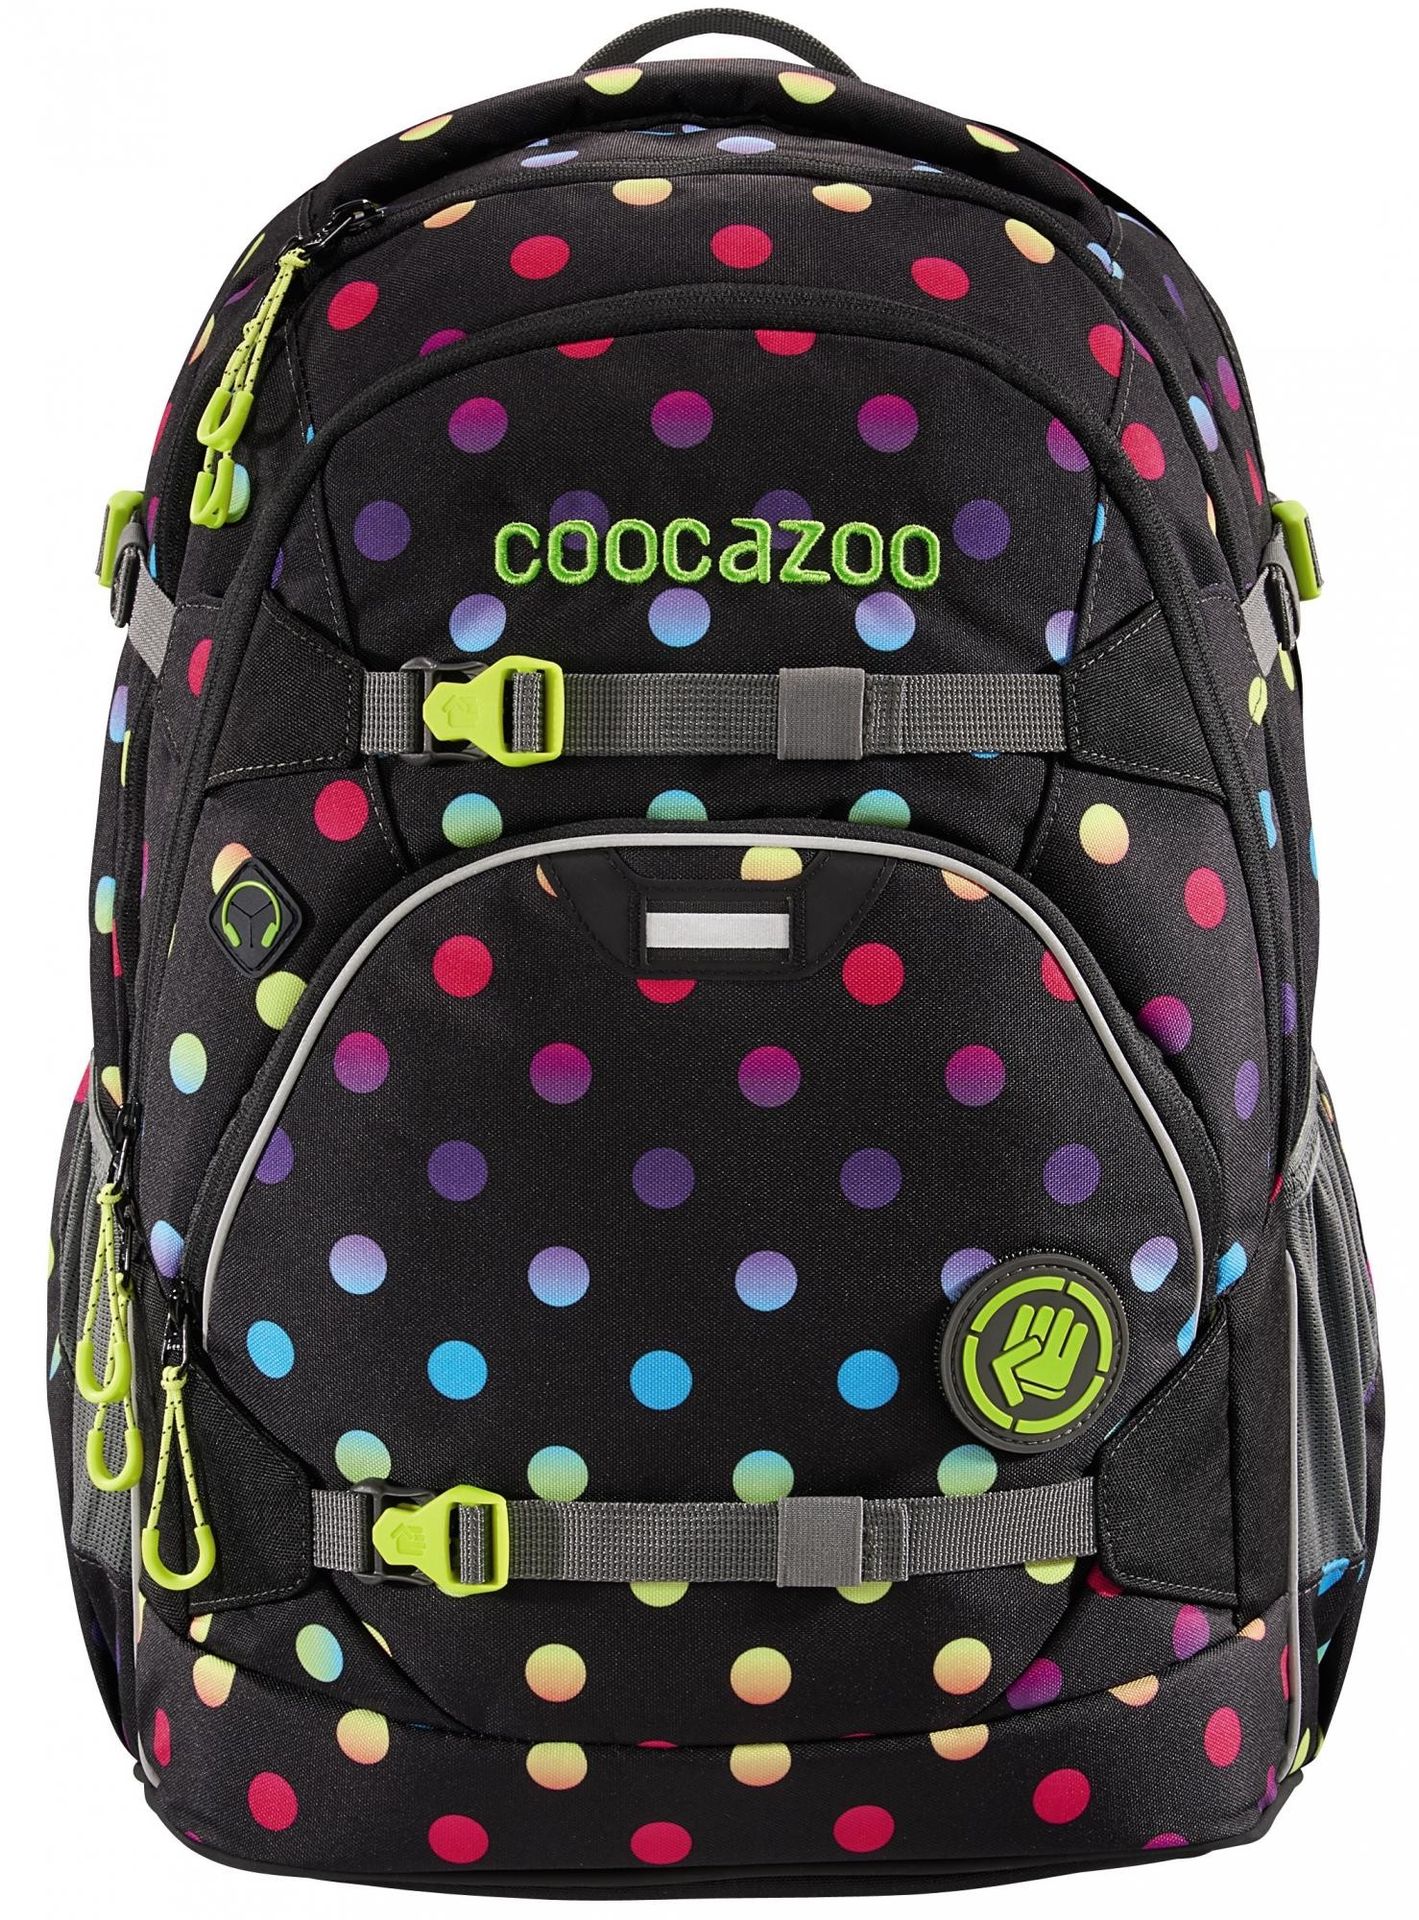 Coocazoo plecak szkolny ScaleRale Magic Polka Colorful certyfikat AGR